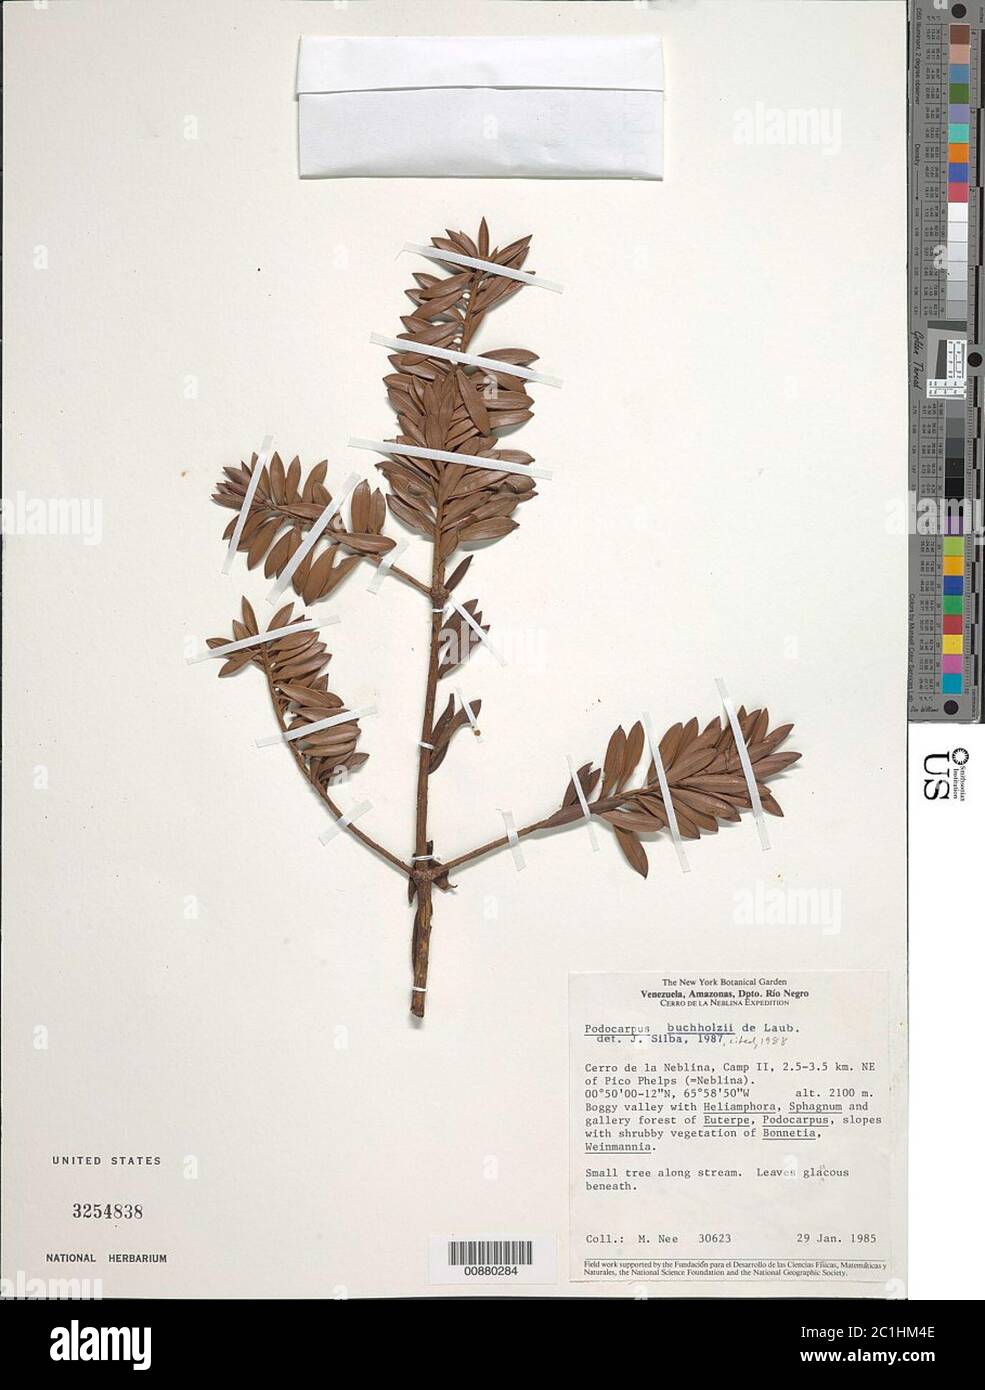 Podocarpus buchholzii de Laub Podocarpus buchholzii de Laub. Stock Photo